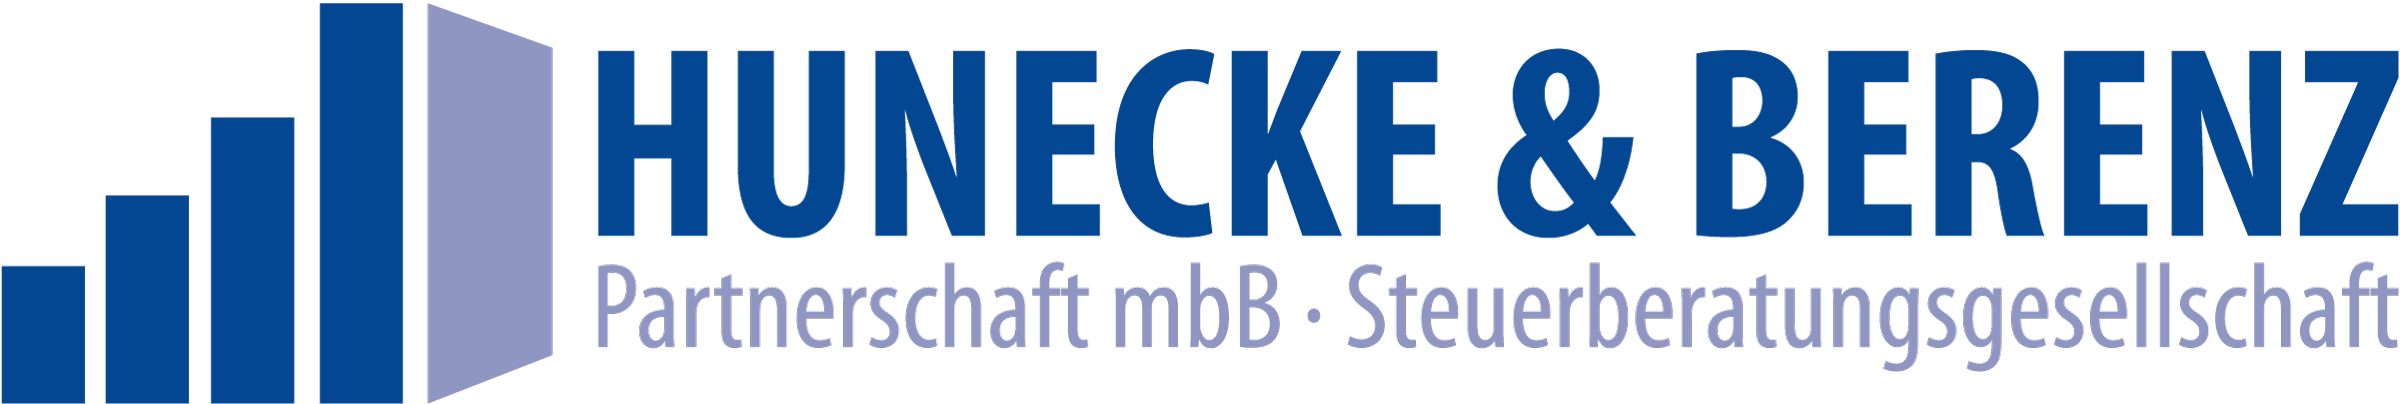 Logo Hunecke Berenz mbH